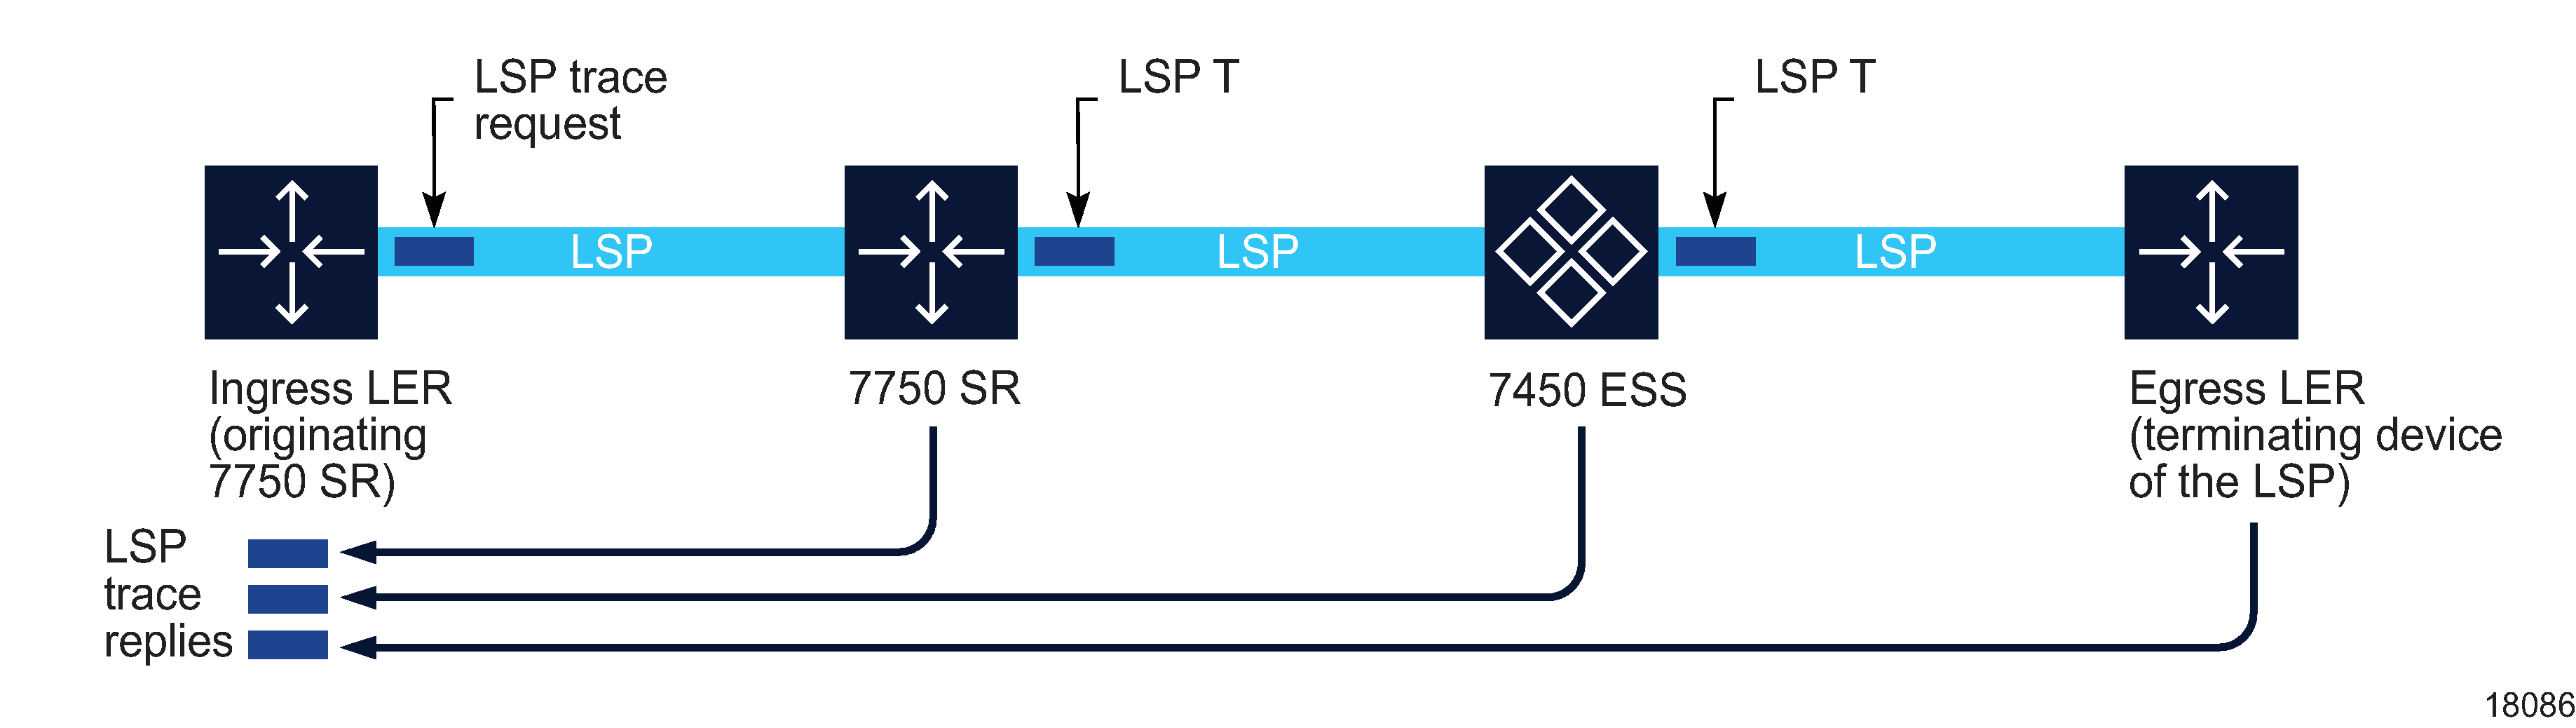 LSP Trace diagnostic test